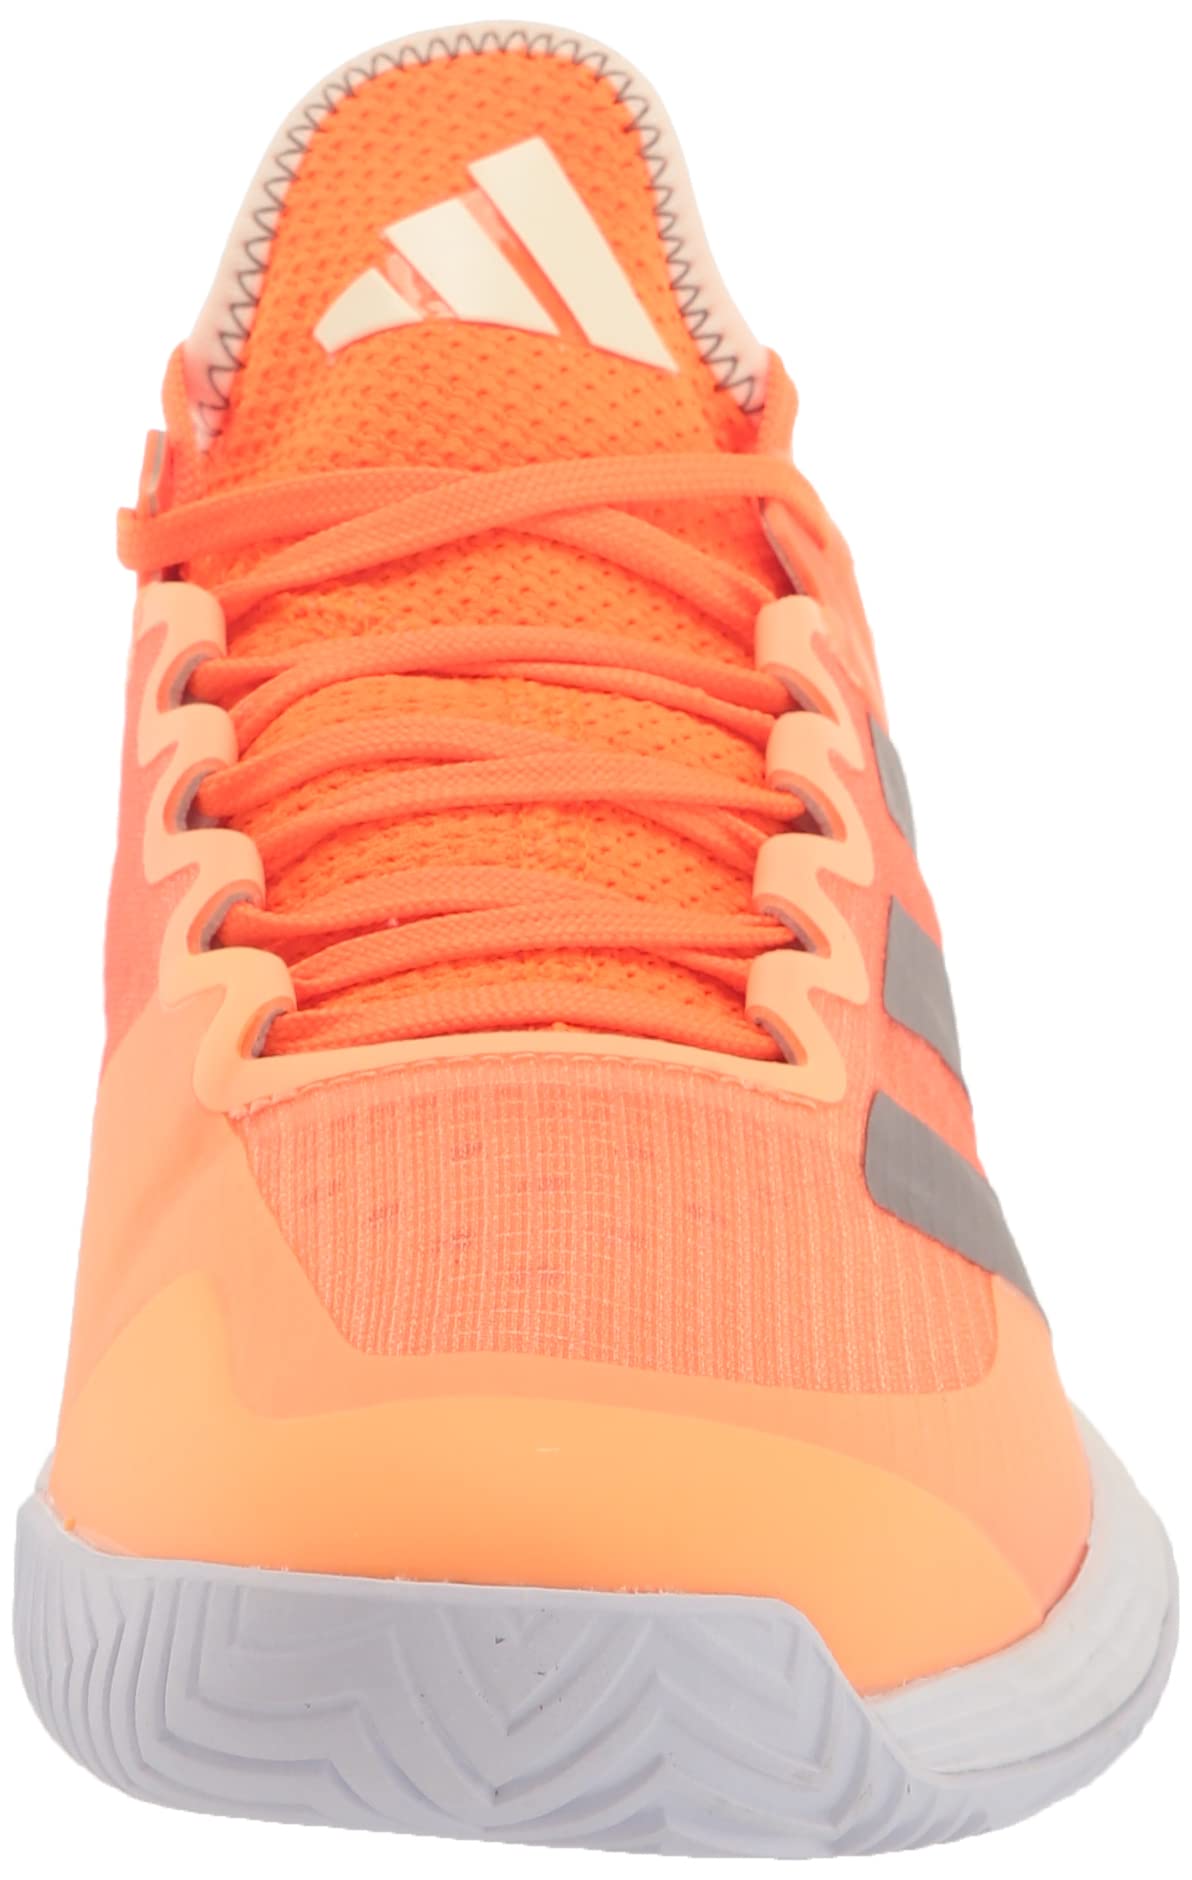 adidas Women's Adizero Ubersonic 4 Tennis Shoe